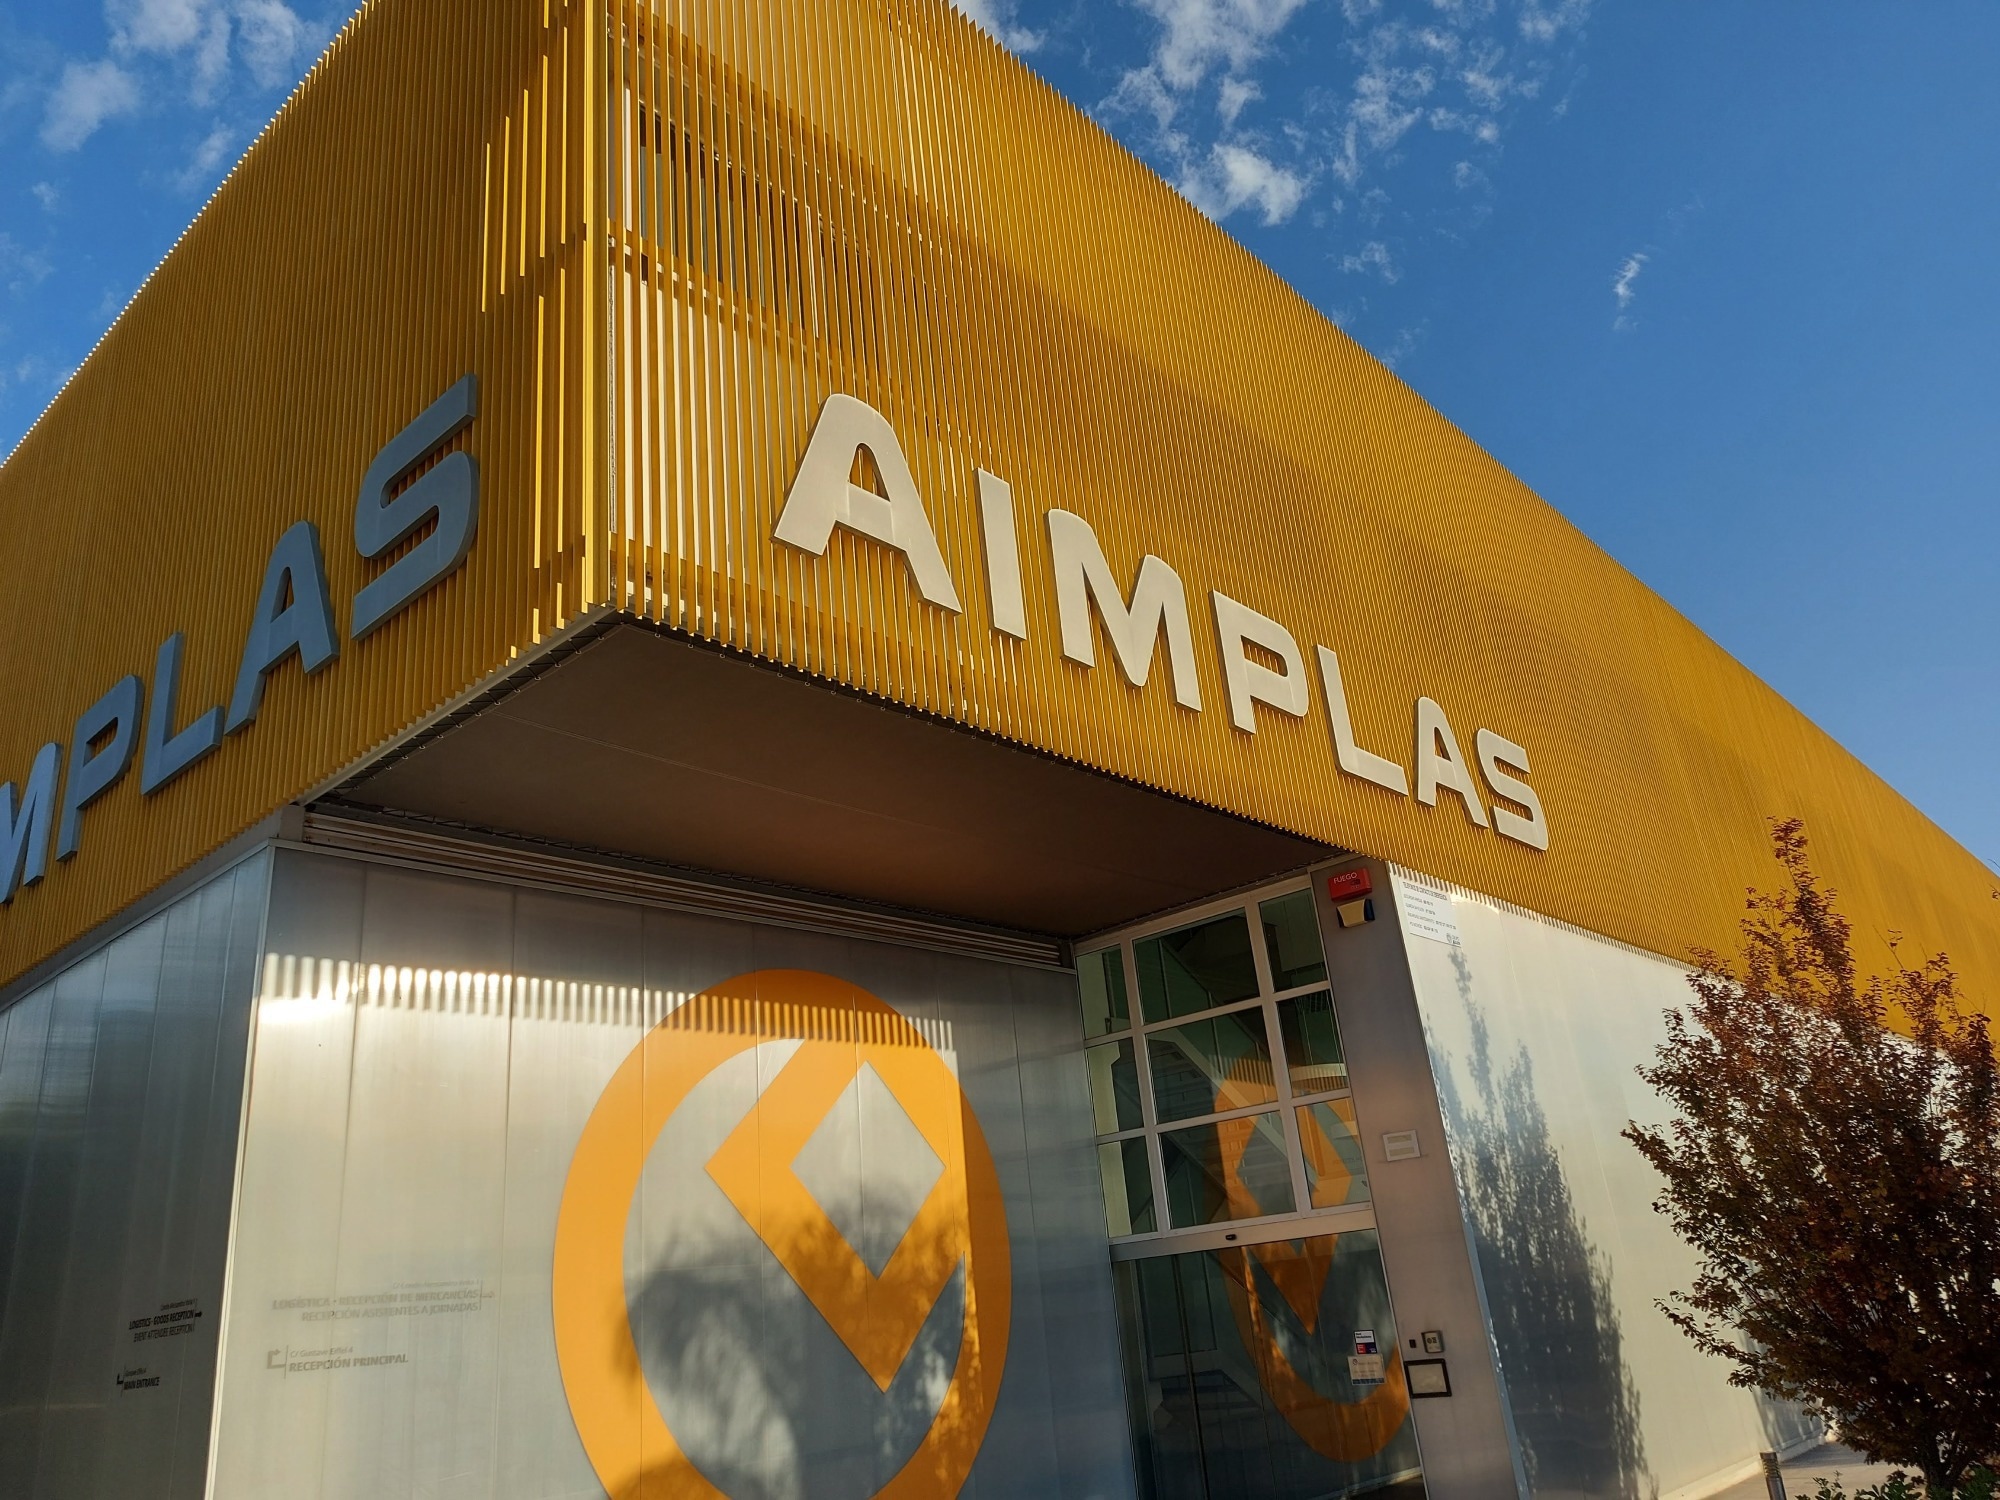 AIMPLAS, plastics industry